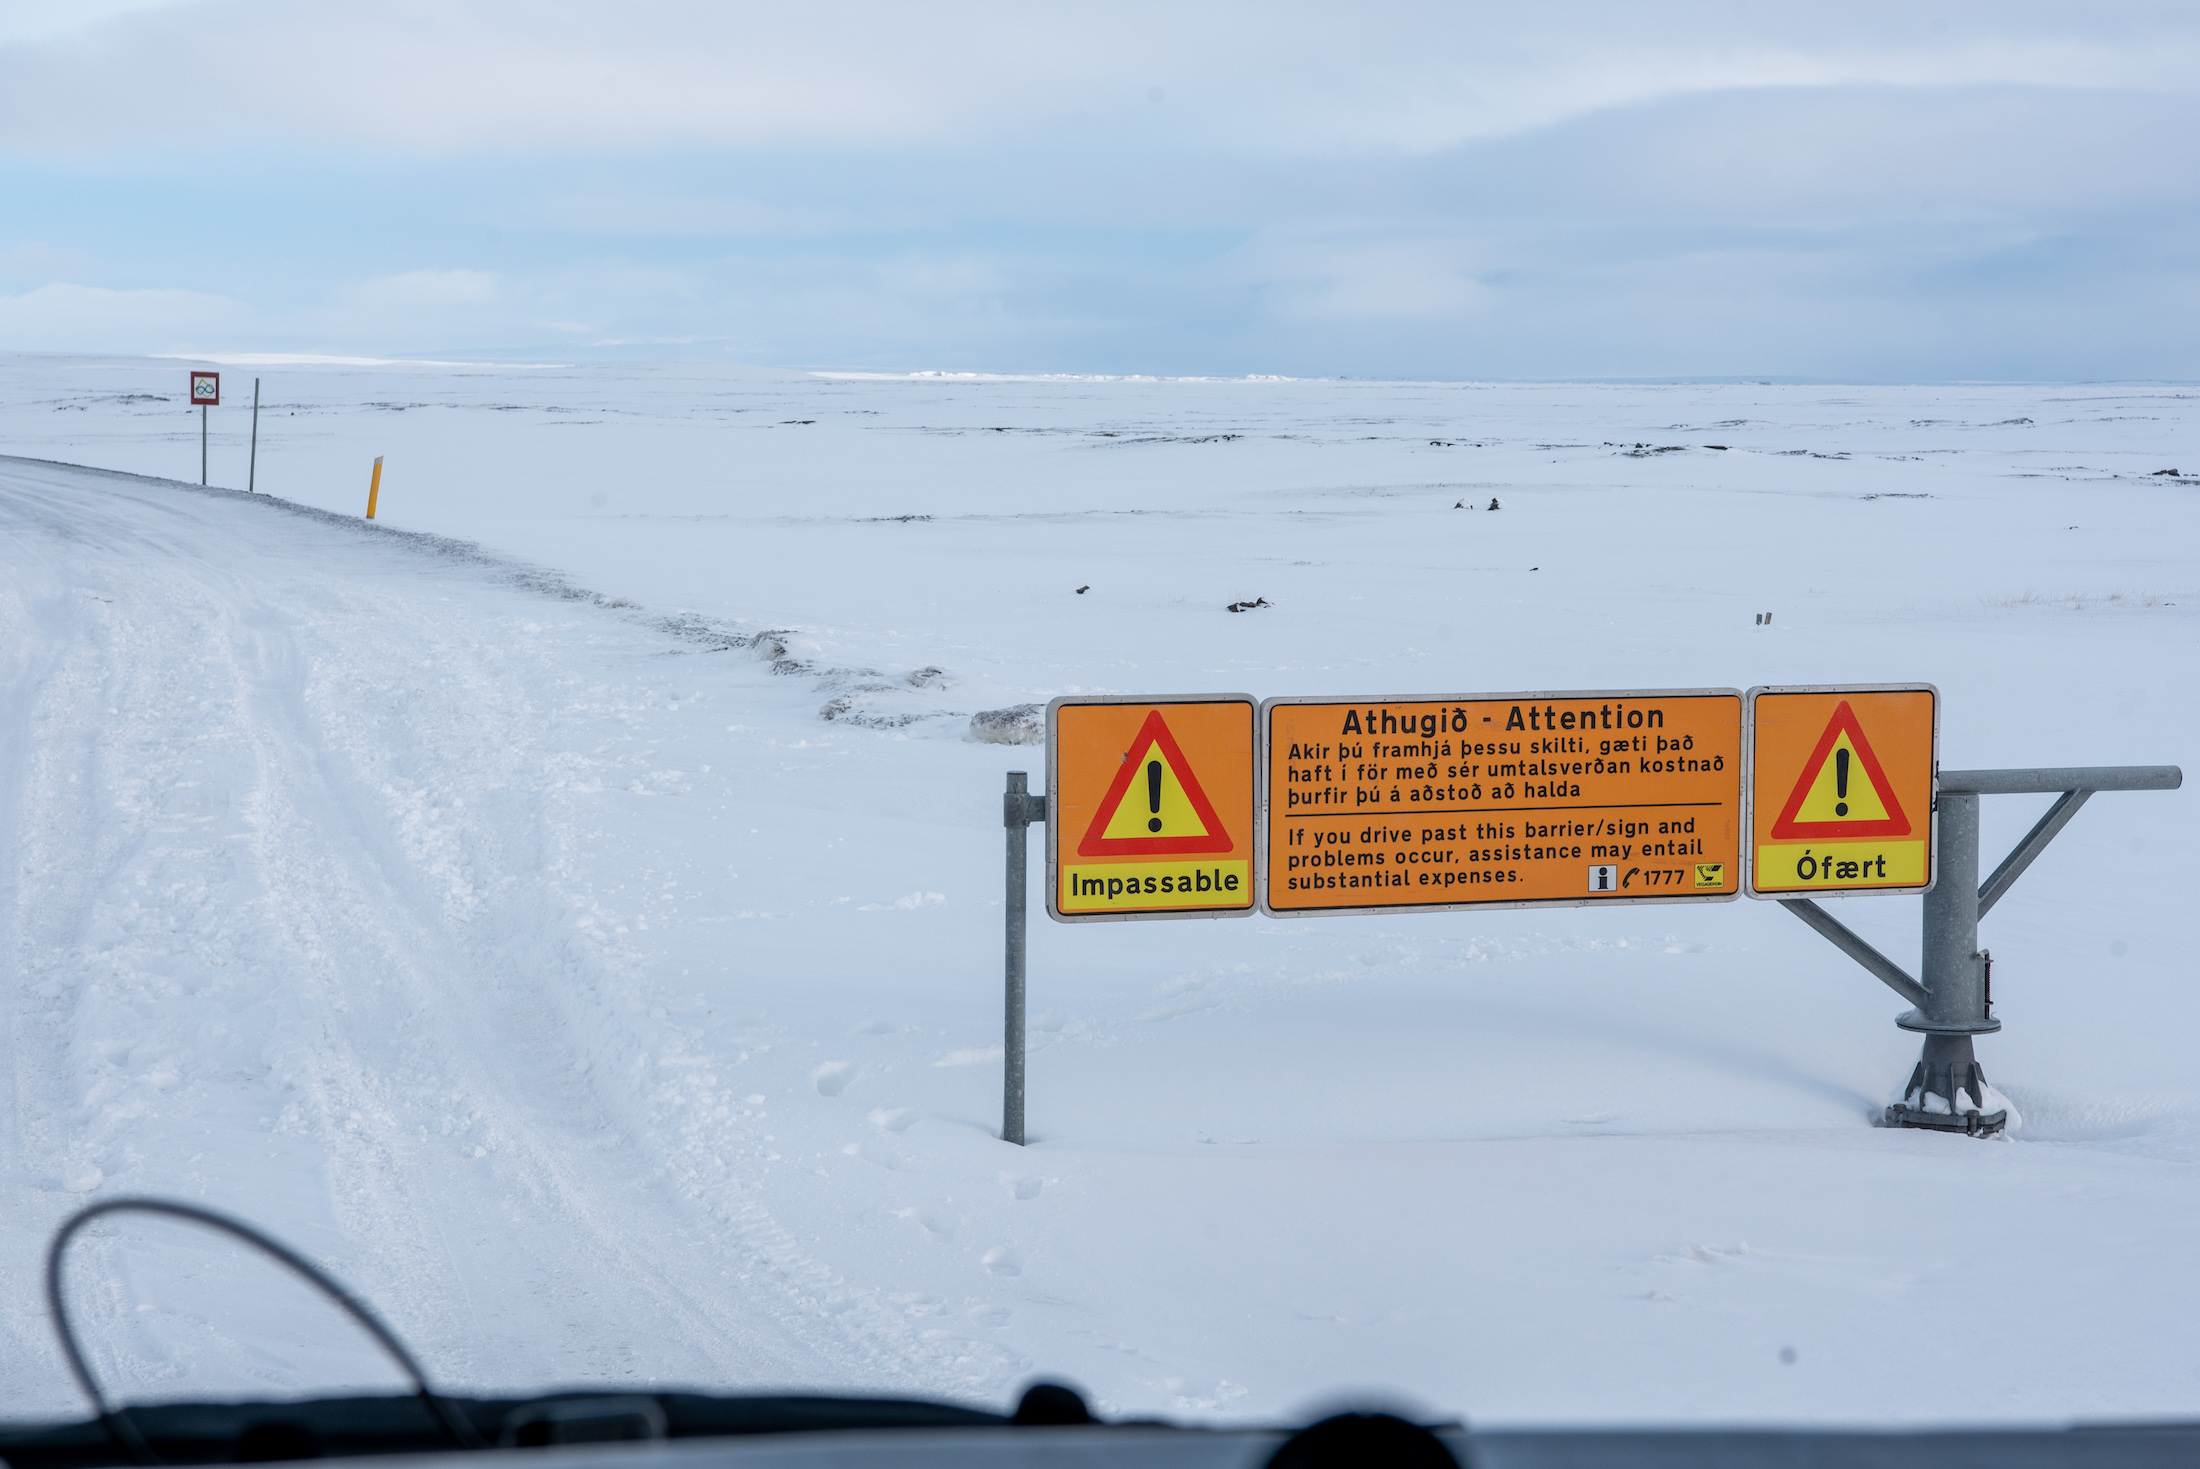 Wegen kunnen afgesloten zijn vanwege sneeuwval